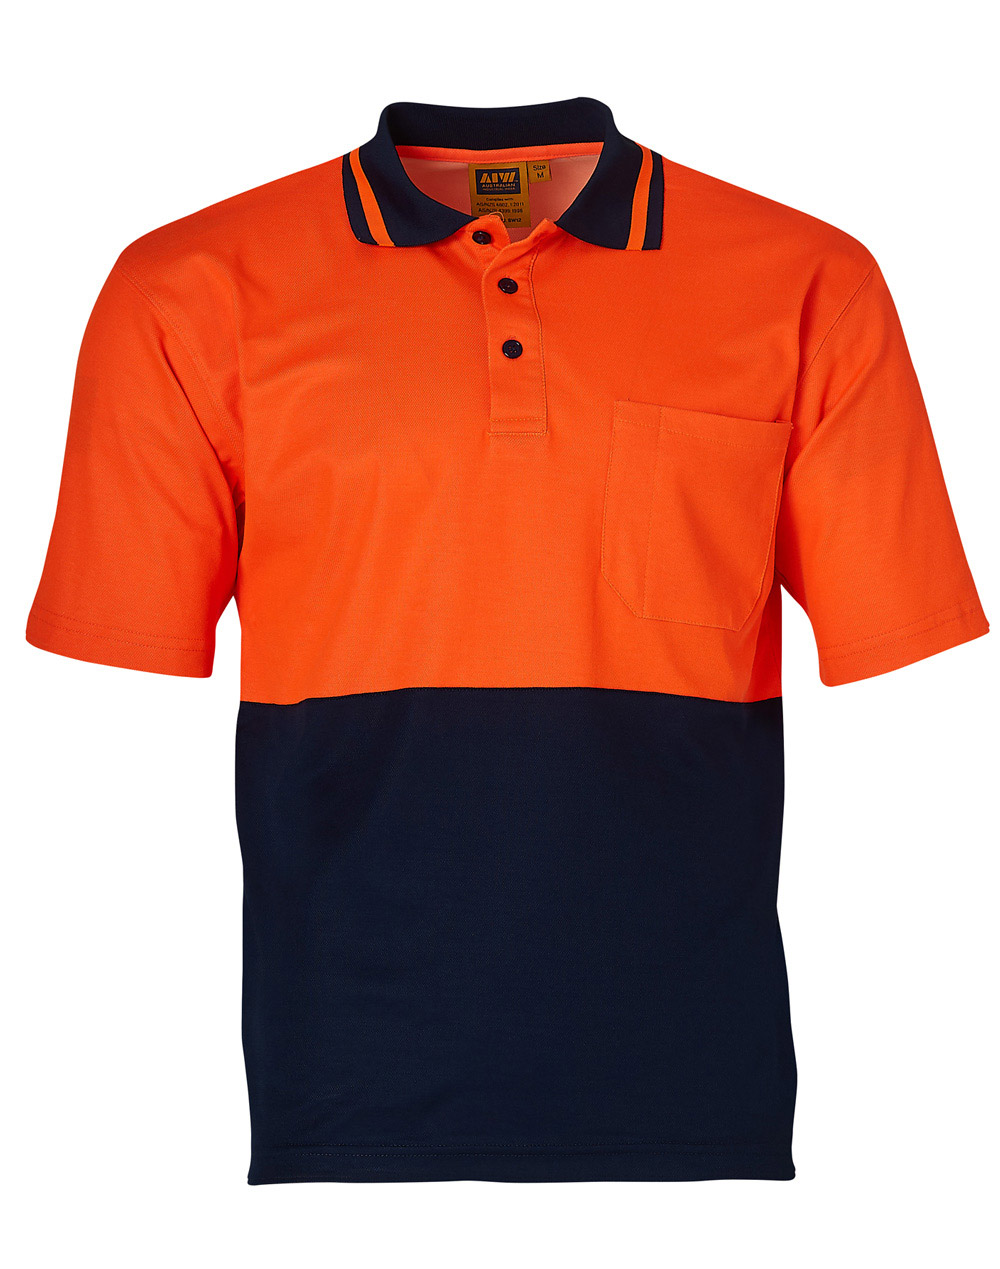 Custom (Fluoro Orange Navy) Safety Short Sleeve Polo Shirts Online Perth Australia